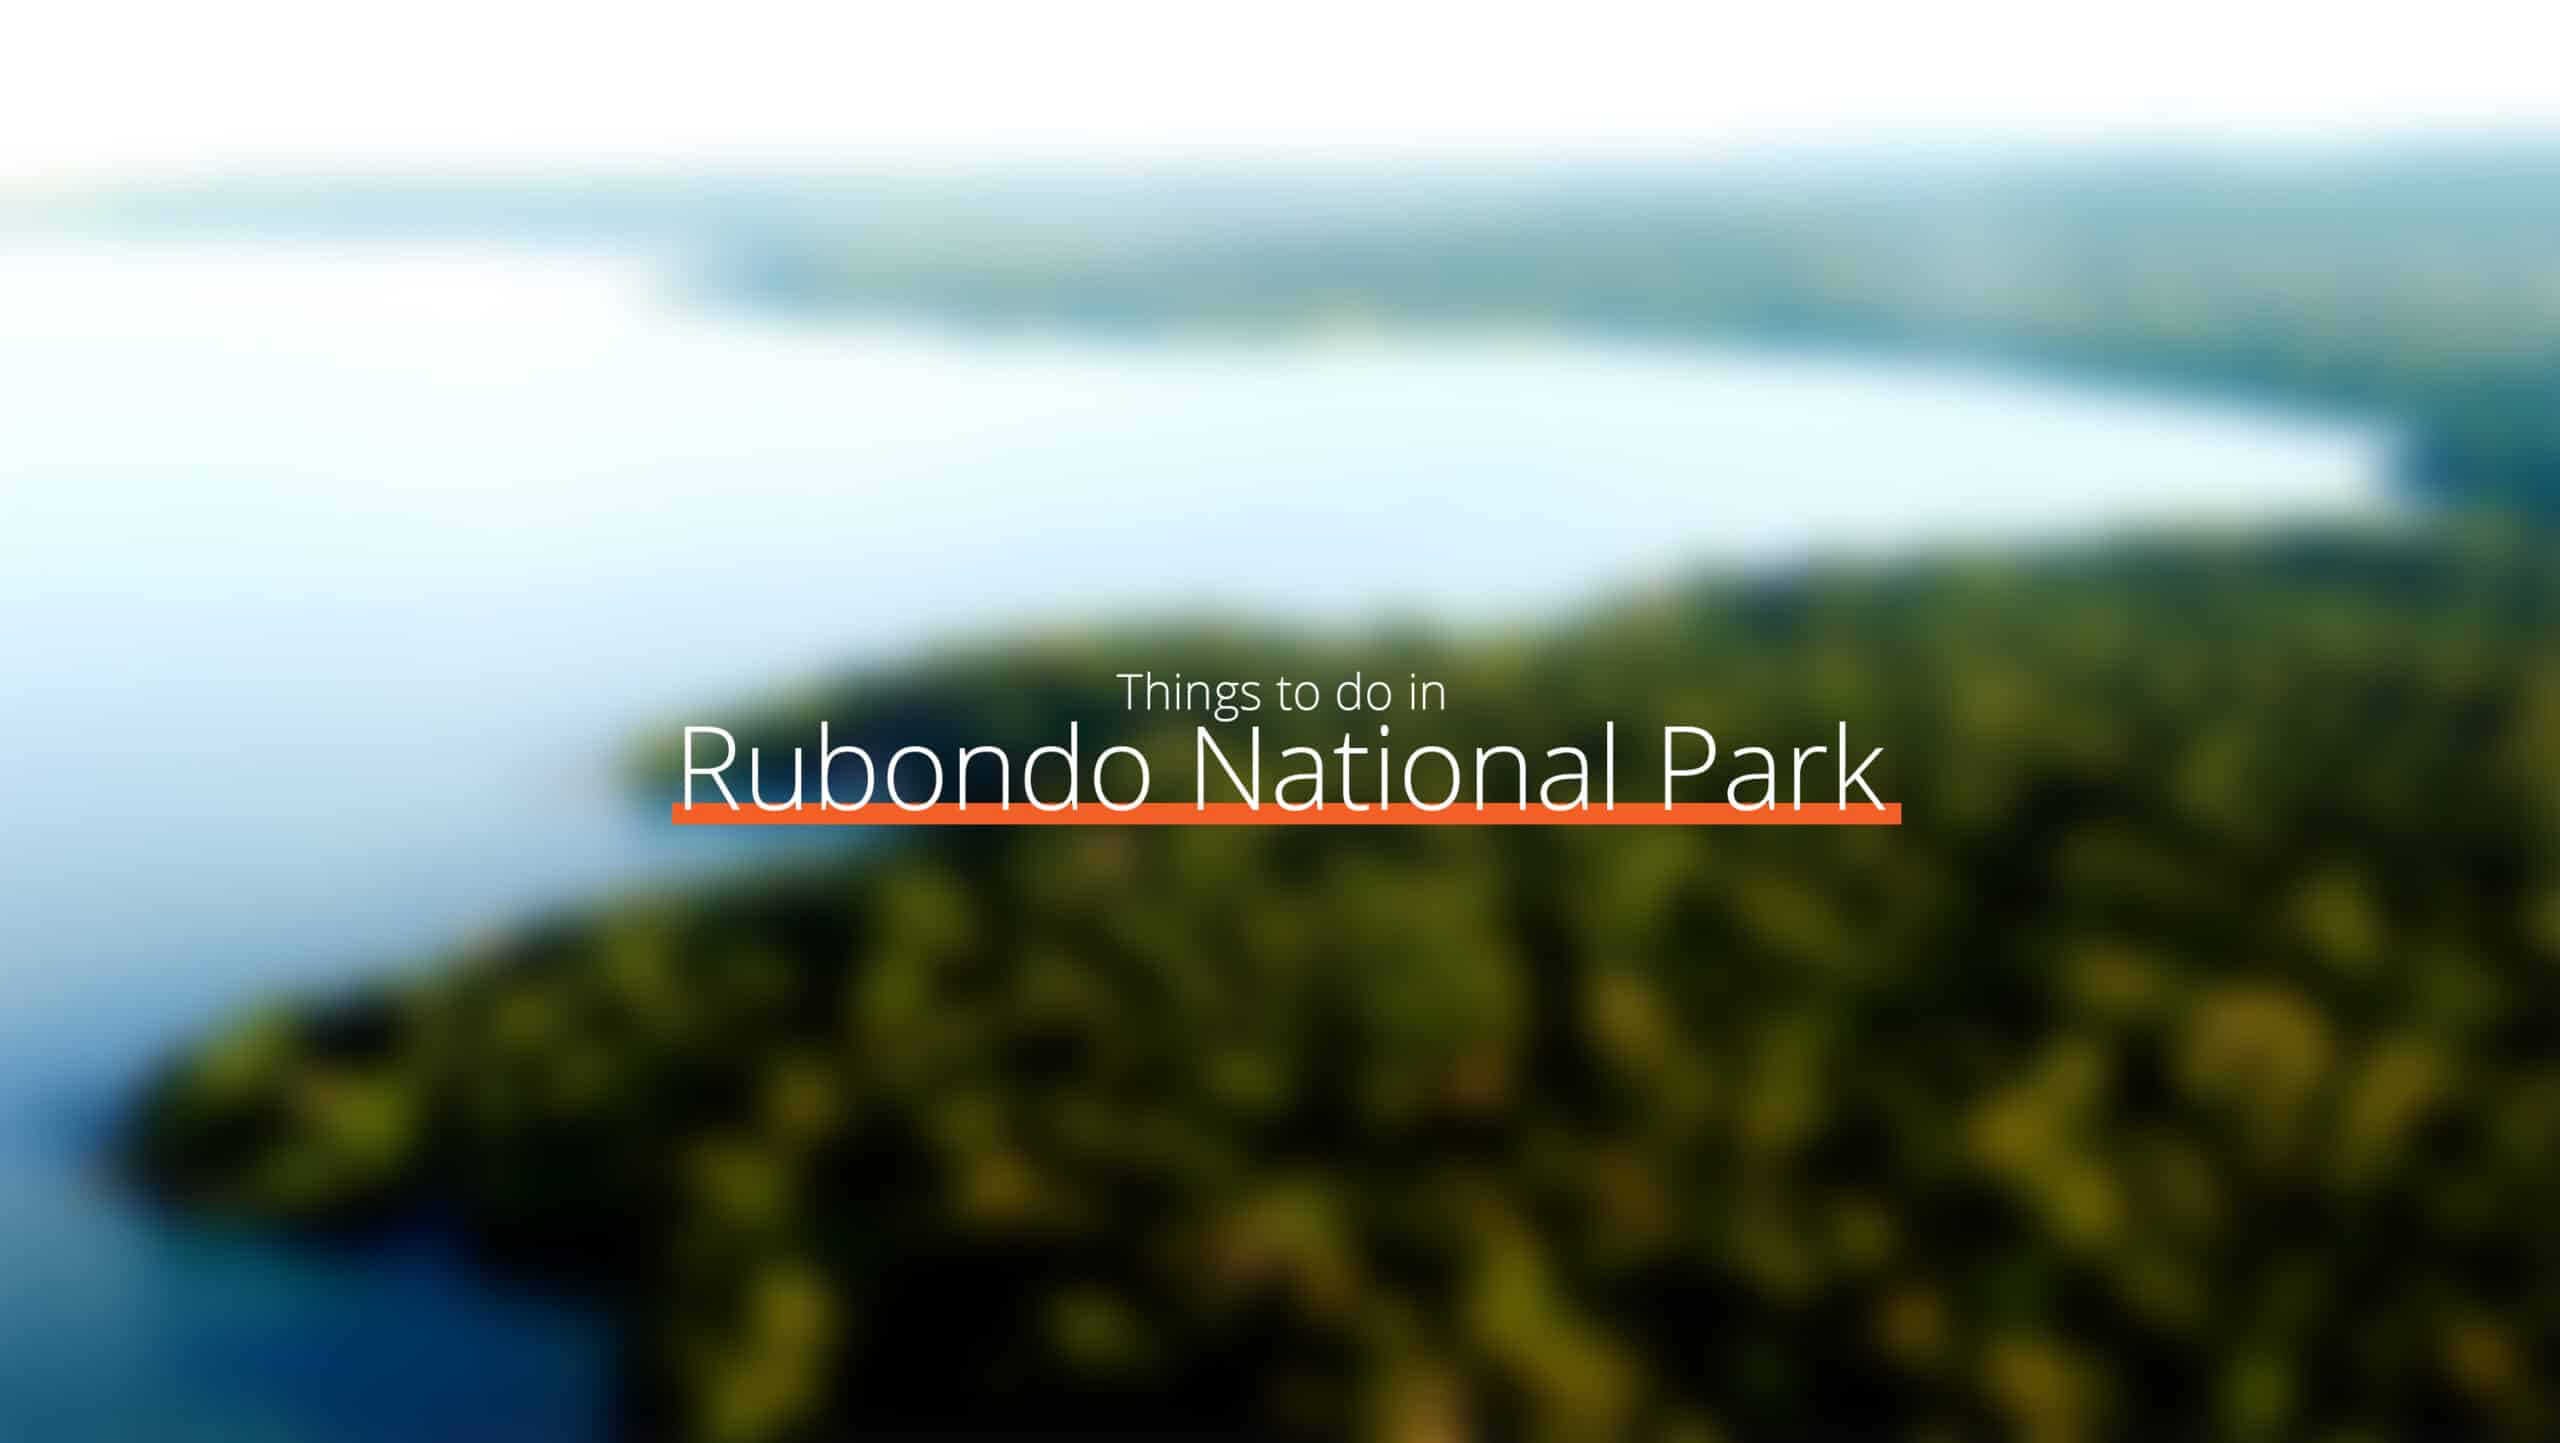 坦桑尼亚 - 鲁邦多国家公园规模化 - 健康